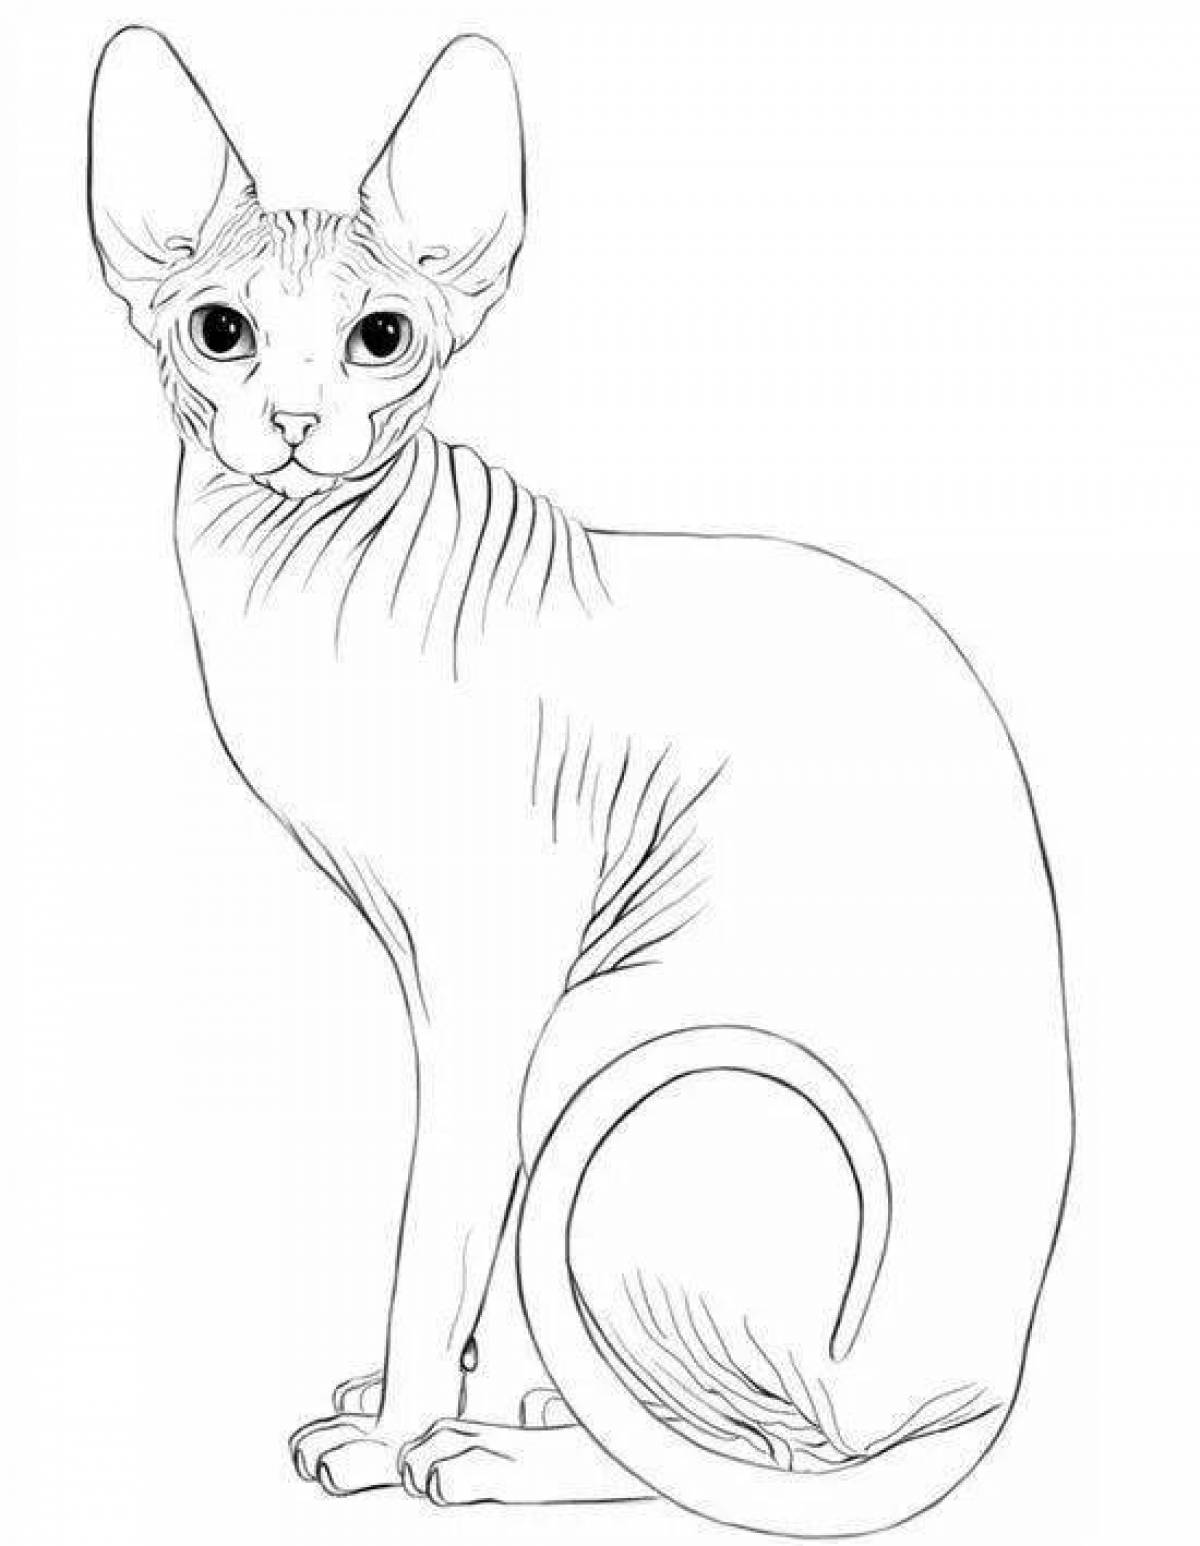 Веселая раскраска кота-сфинкса